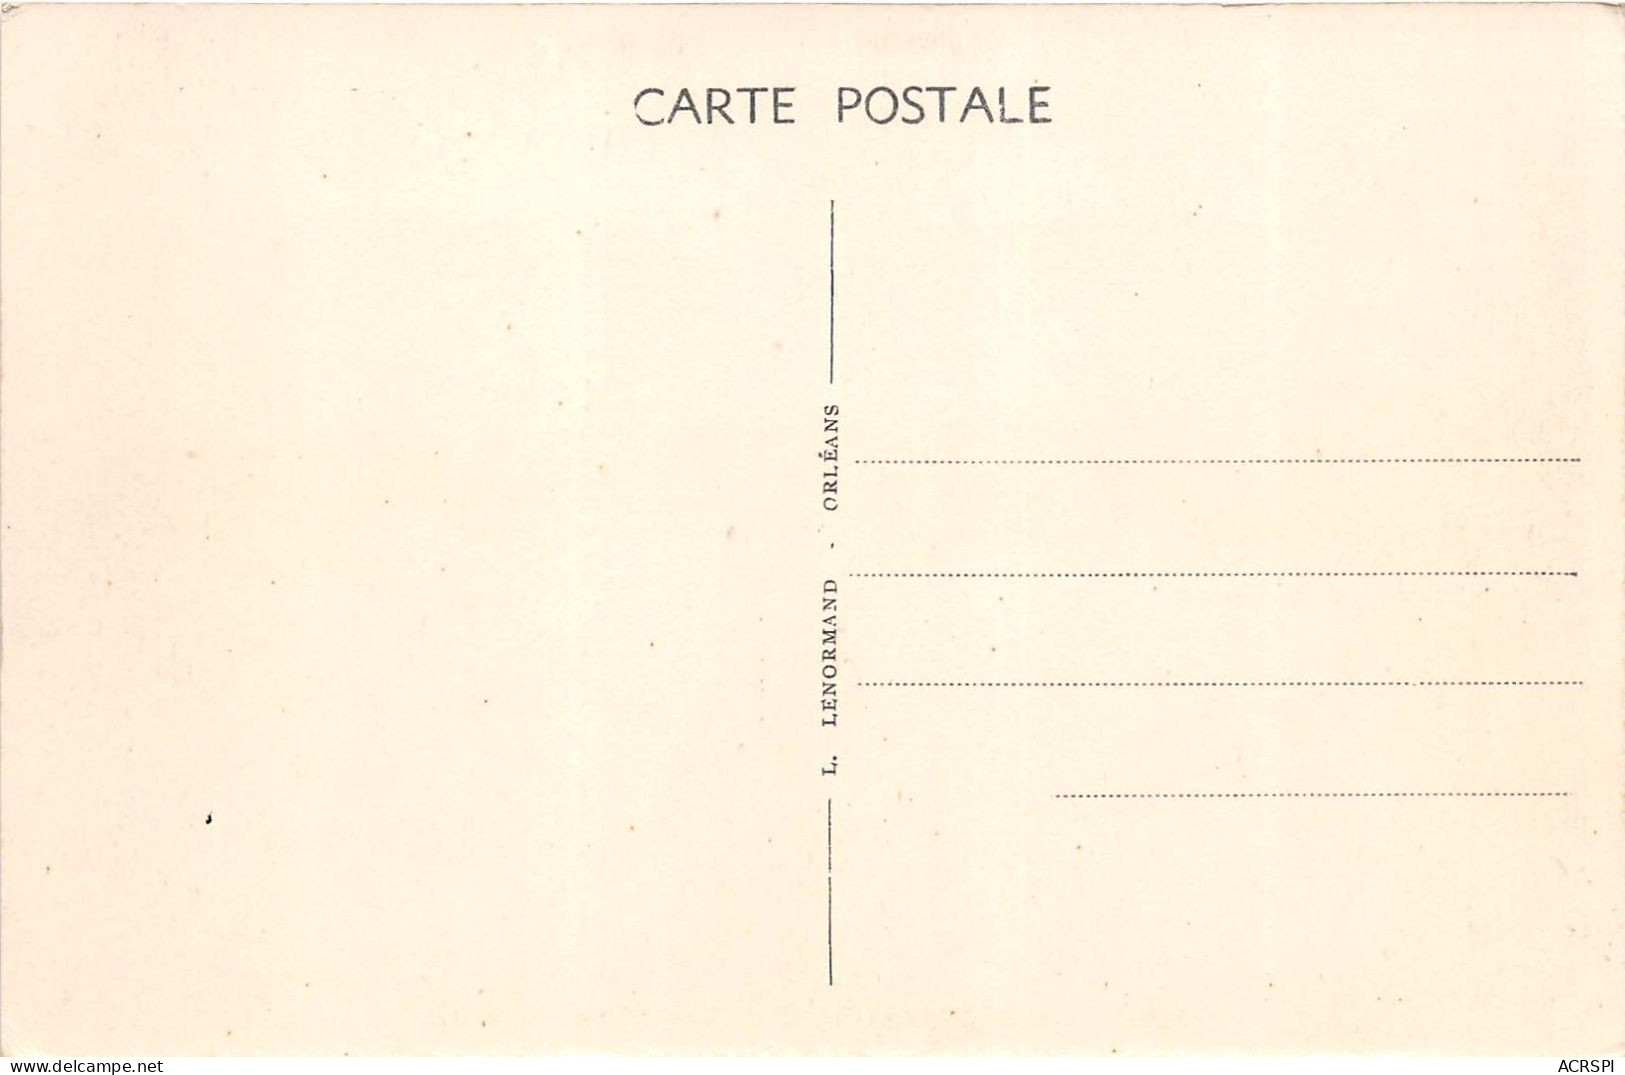 POUILLY SUR LOIRE Le Chateau De Nozet 24(scan Recto-verso) MA867 - Pouilly Sur Loire